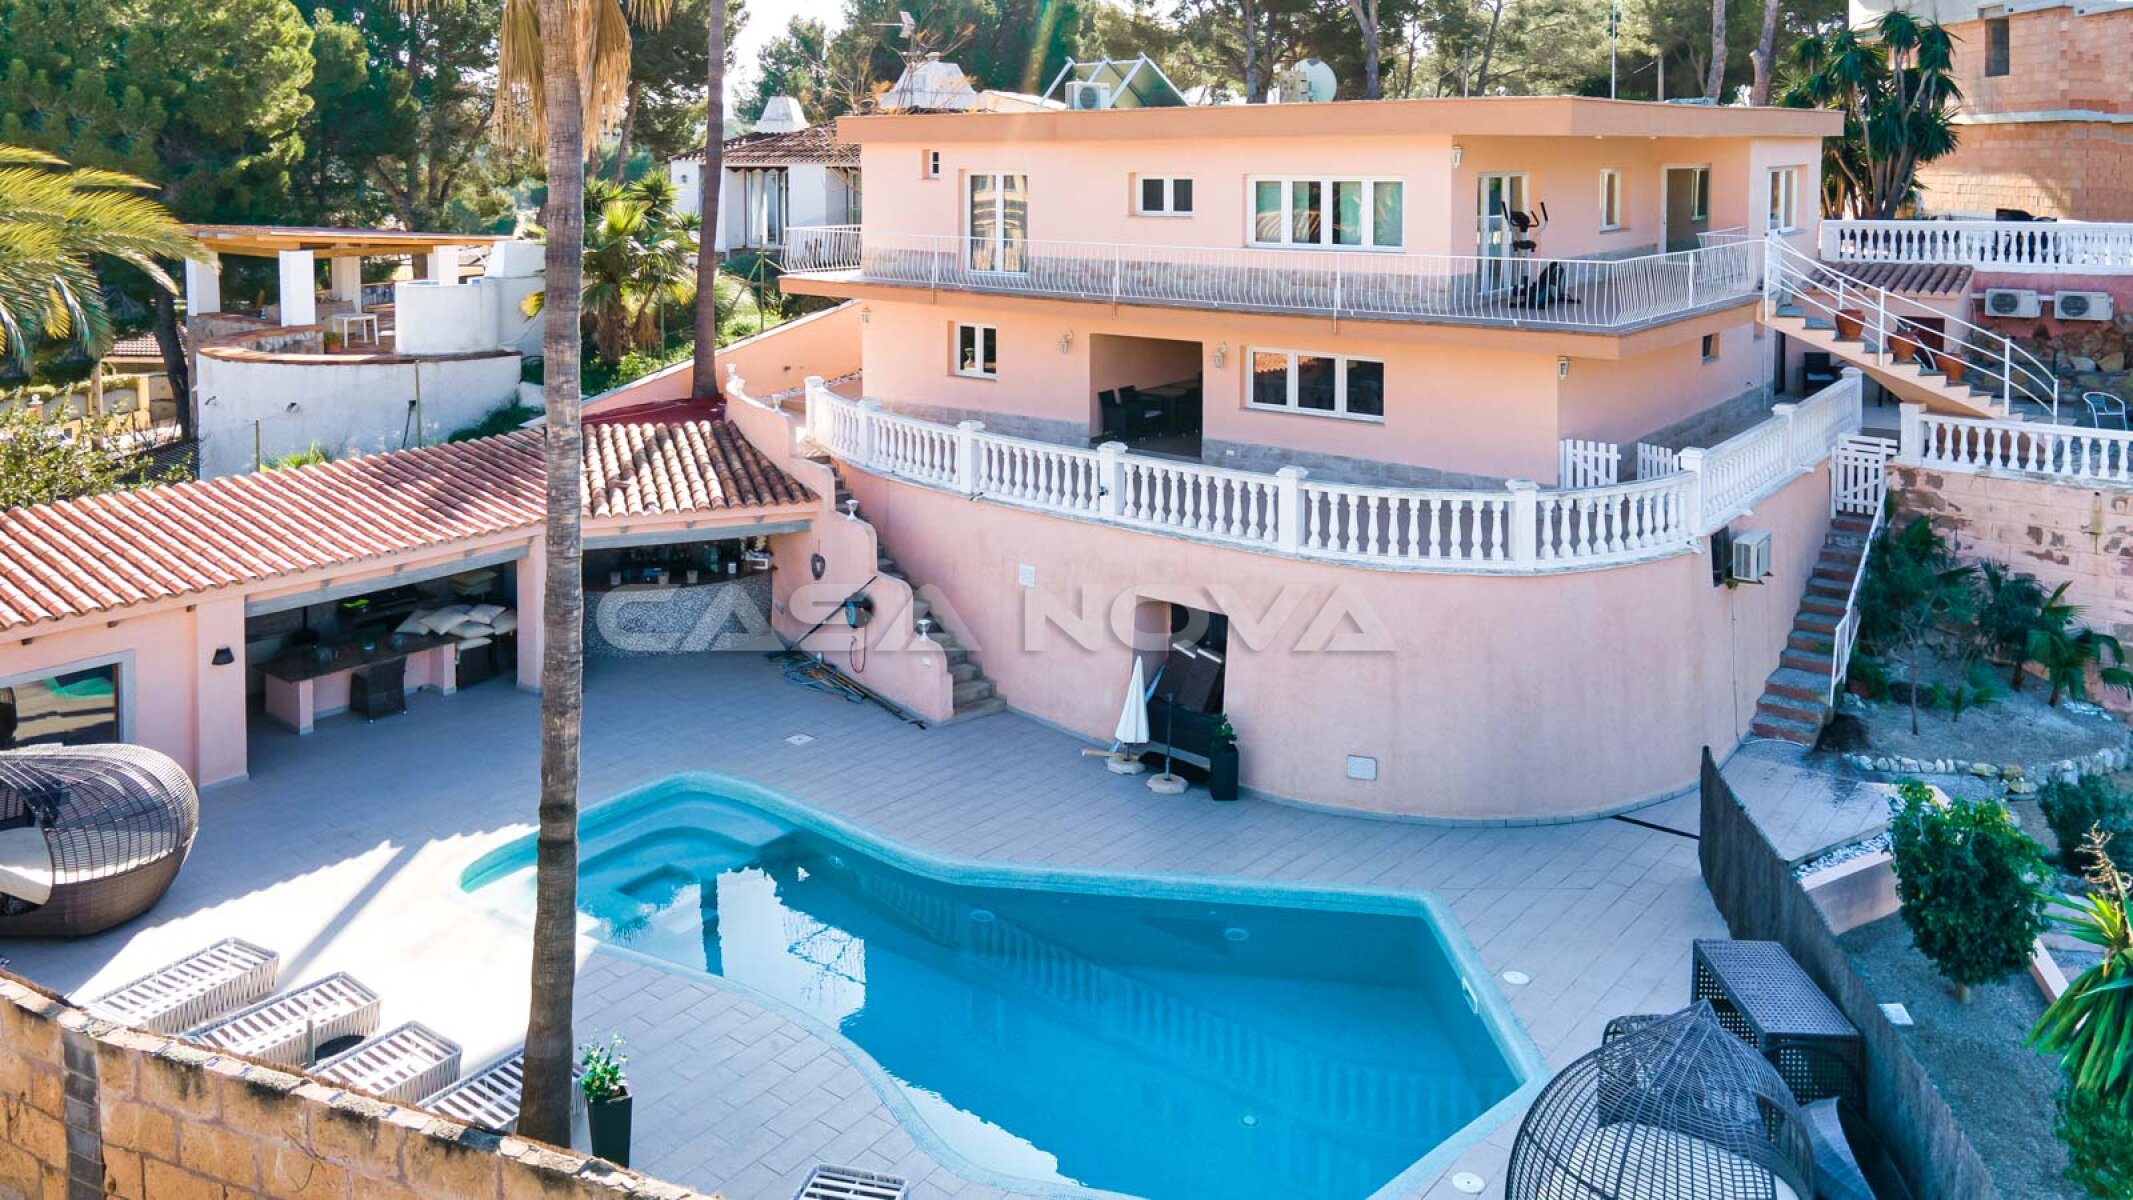 Gro�z�gige Mallorca Villa mit Top Ausstattung in ruhiger Lage